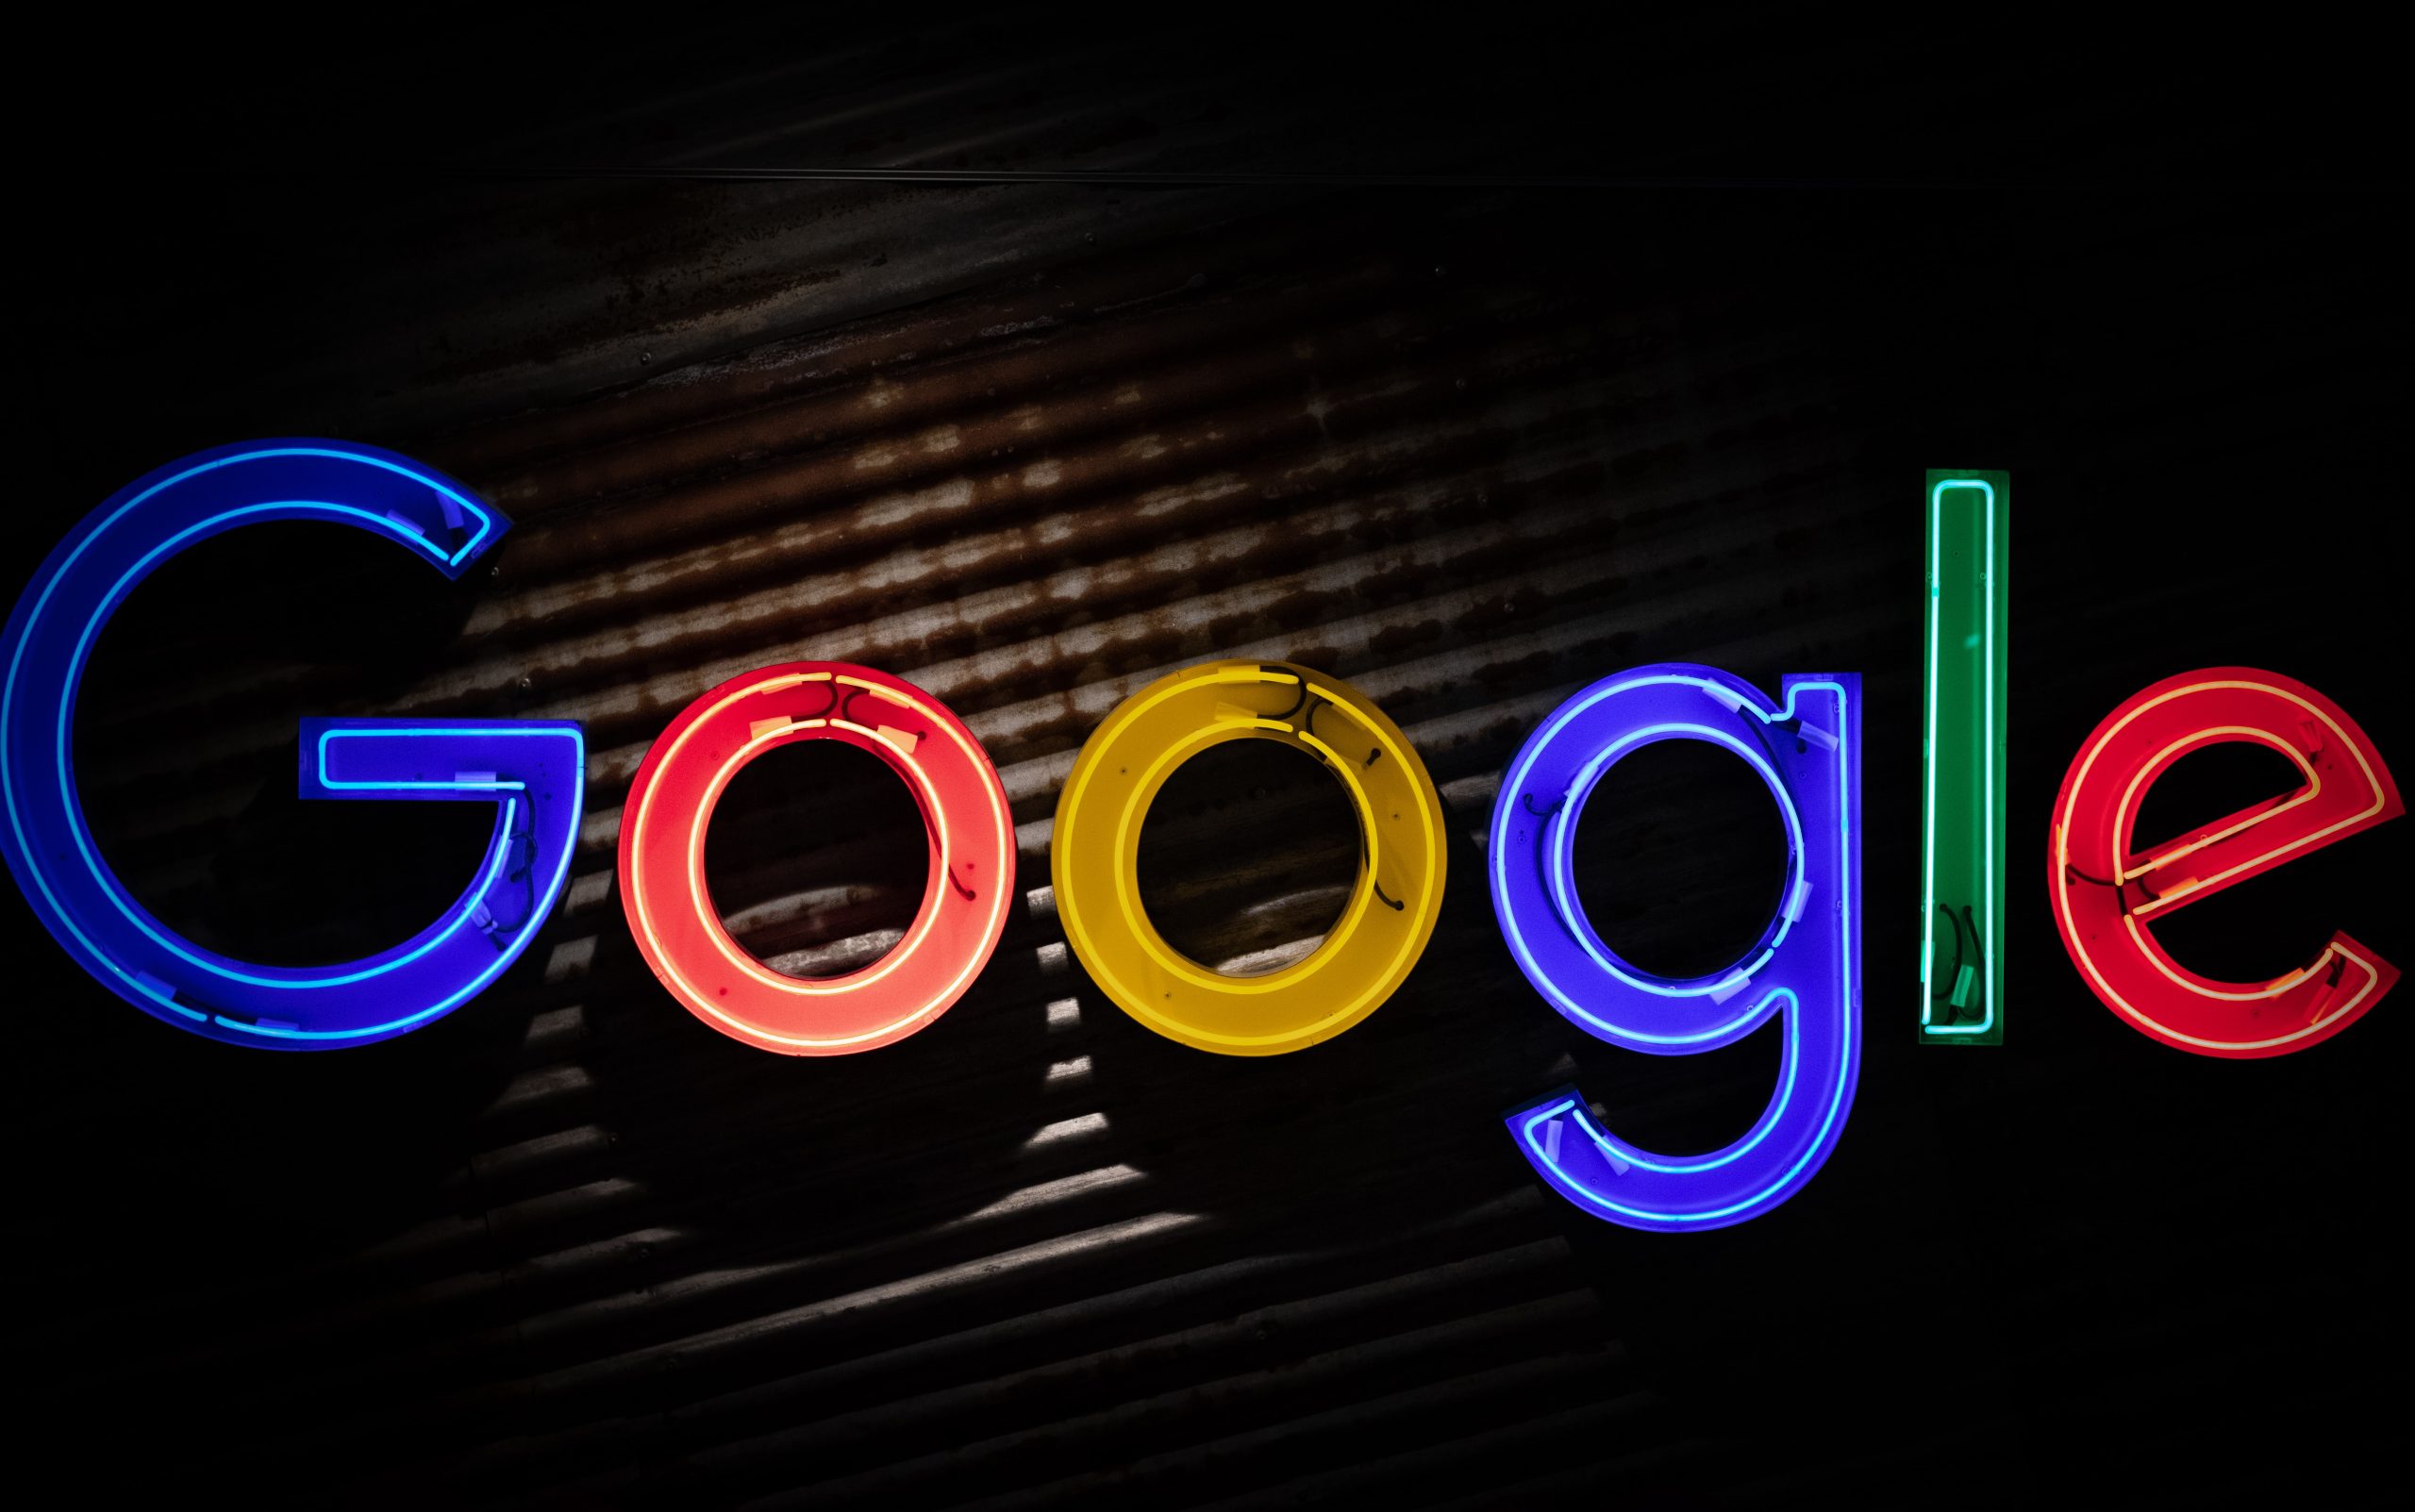 Το κόλπο για να ανακαλύψετε τι ξέρει η Google για εσάς (βίντεο)